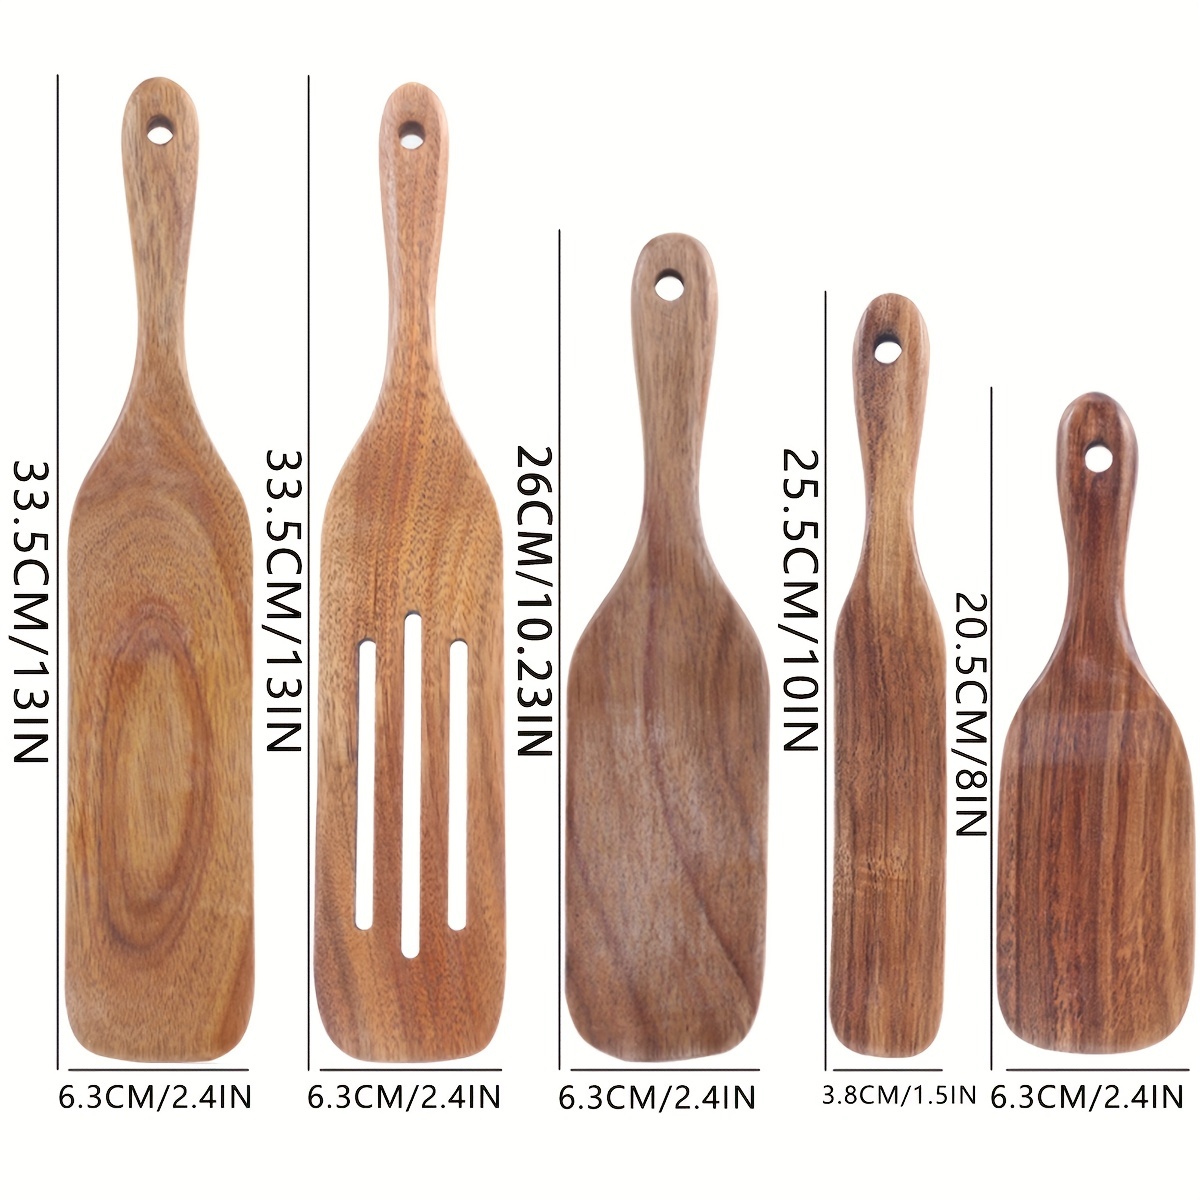 wood kitchen accessories 